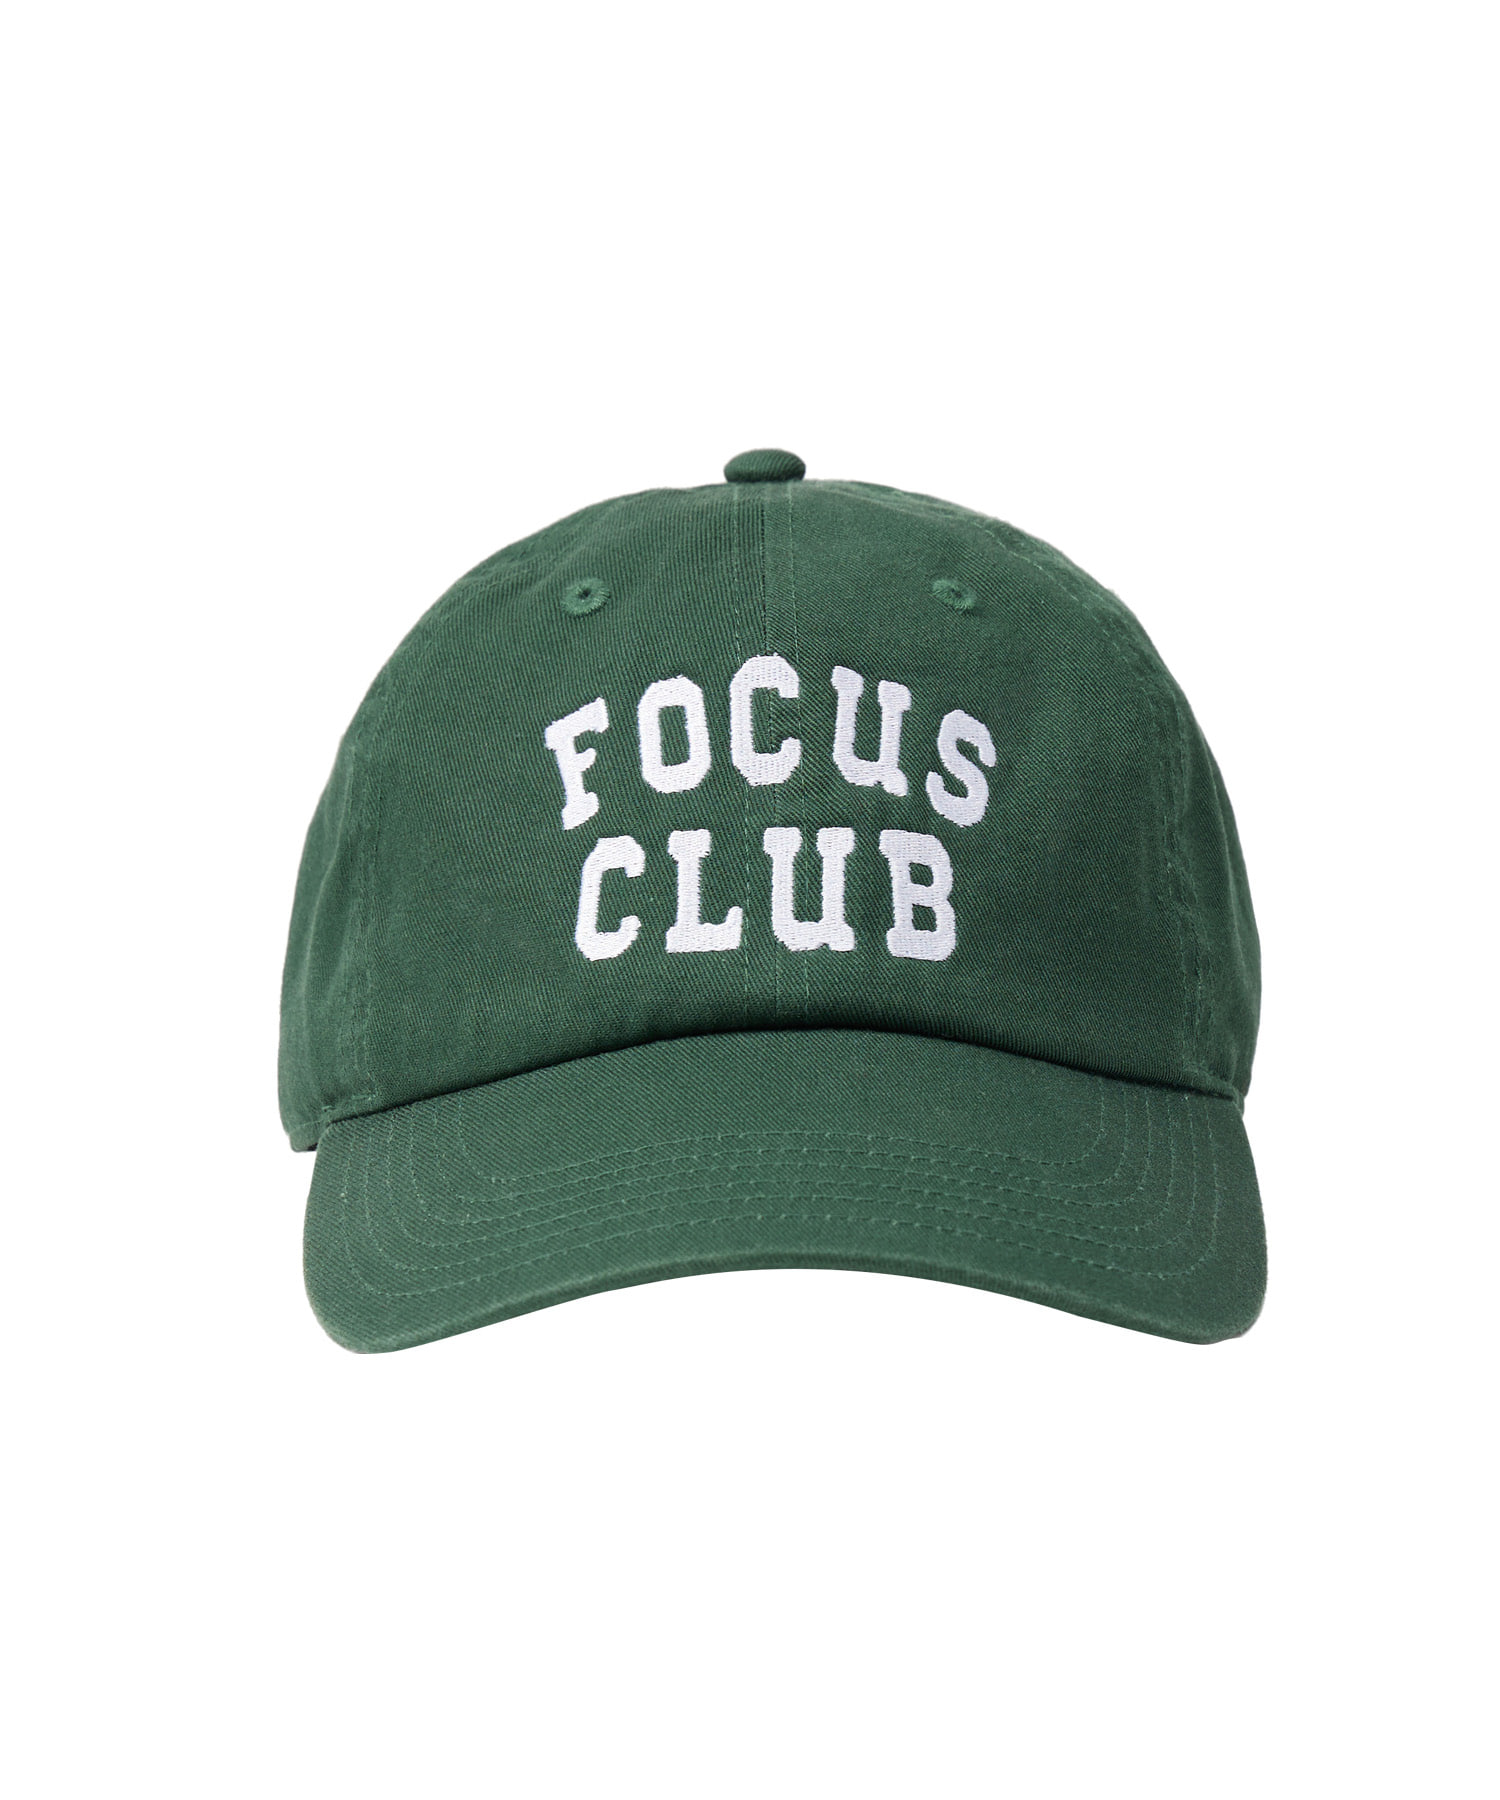 라이프 아카이브 FOCUS CLUB BALL CAP_GREEN 라이프,LIFE, LIFE ARCHIVE,볼캡,라이프볼캡,ballcap